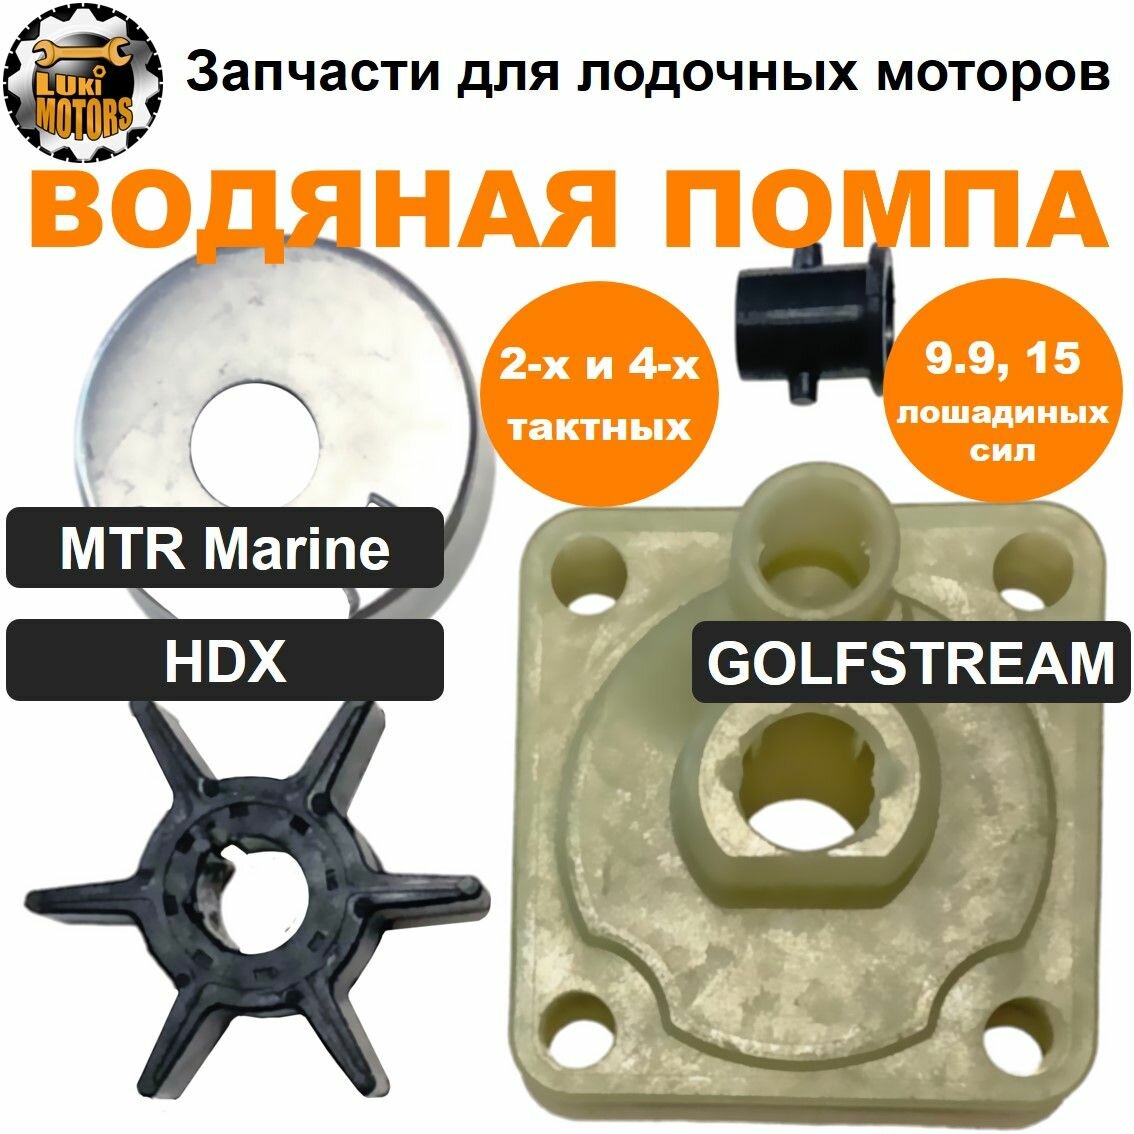 Ремкомплект водяной помпы HDX, GOLFSTREAM 9.9 и 15 л. с (2-х и 4-х тактных)